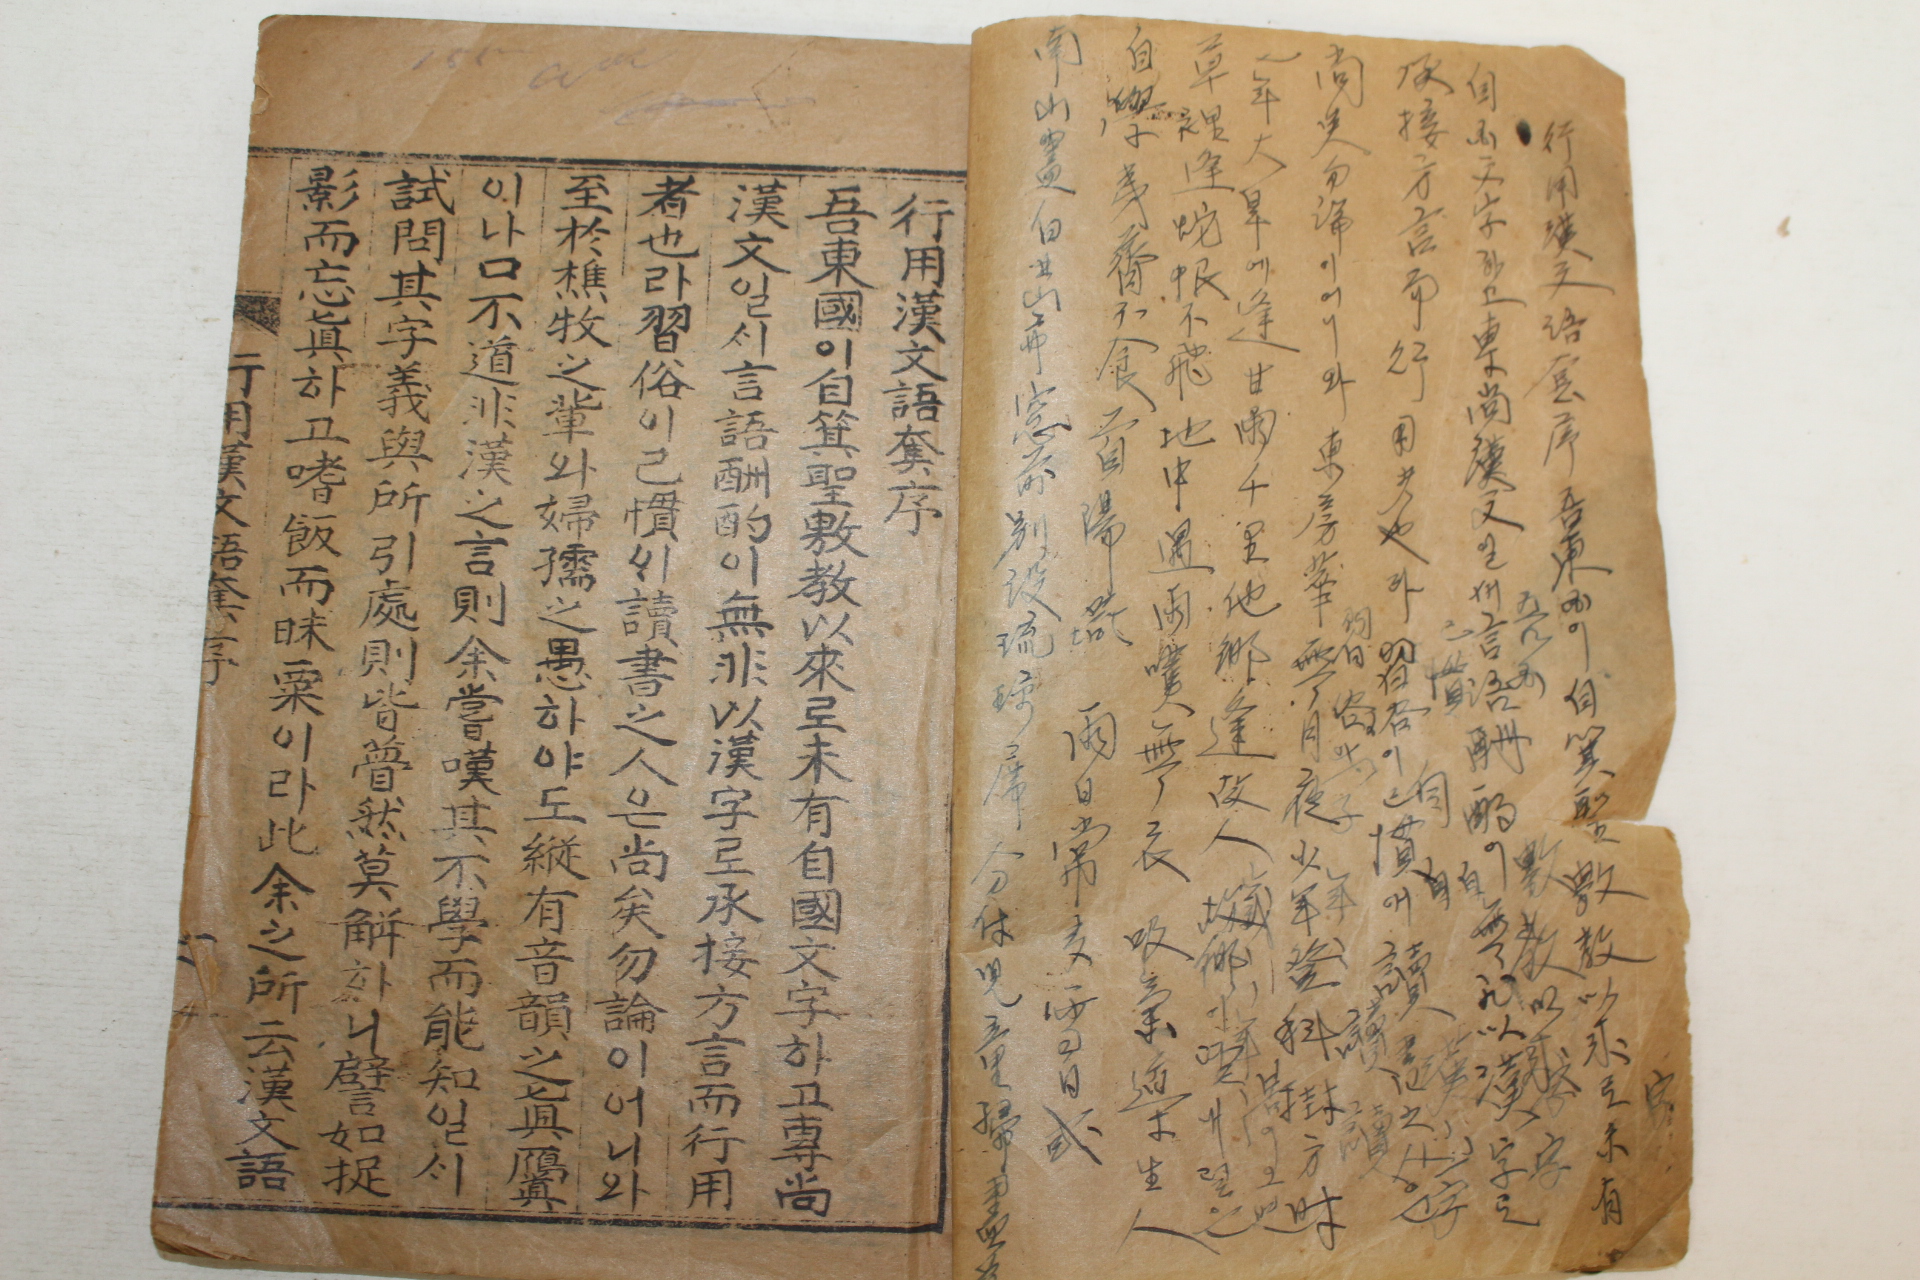 1939년 이창동(李昌東) 행용한문어투(行用漢文語套) 1책완질